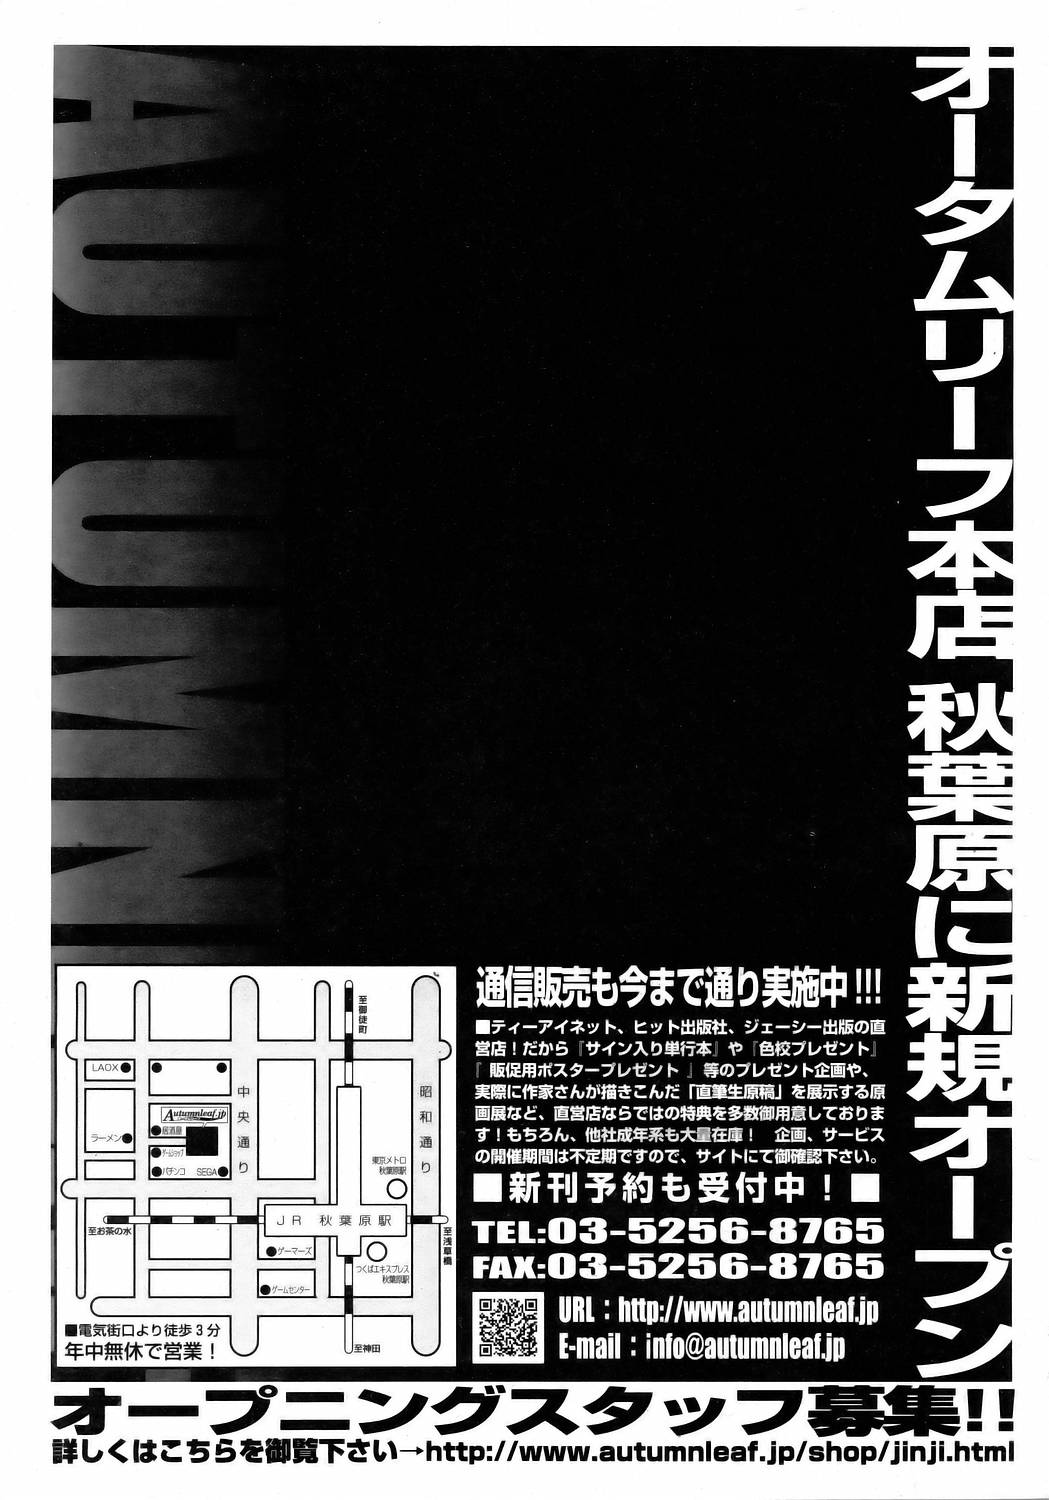 COMIC AUN 2006-05 Vol. 120 COMIC 阿吽 2006年5月号 VOL.120